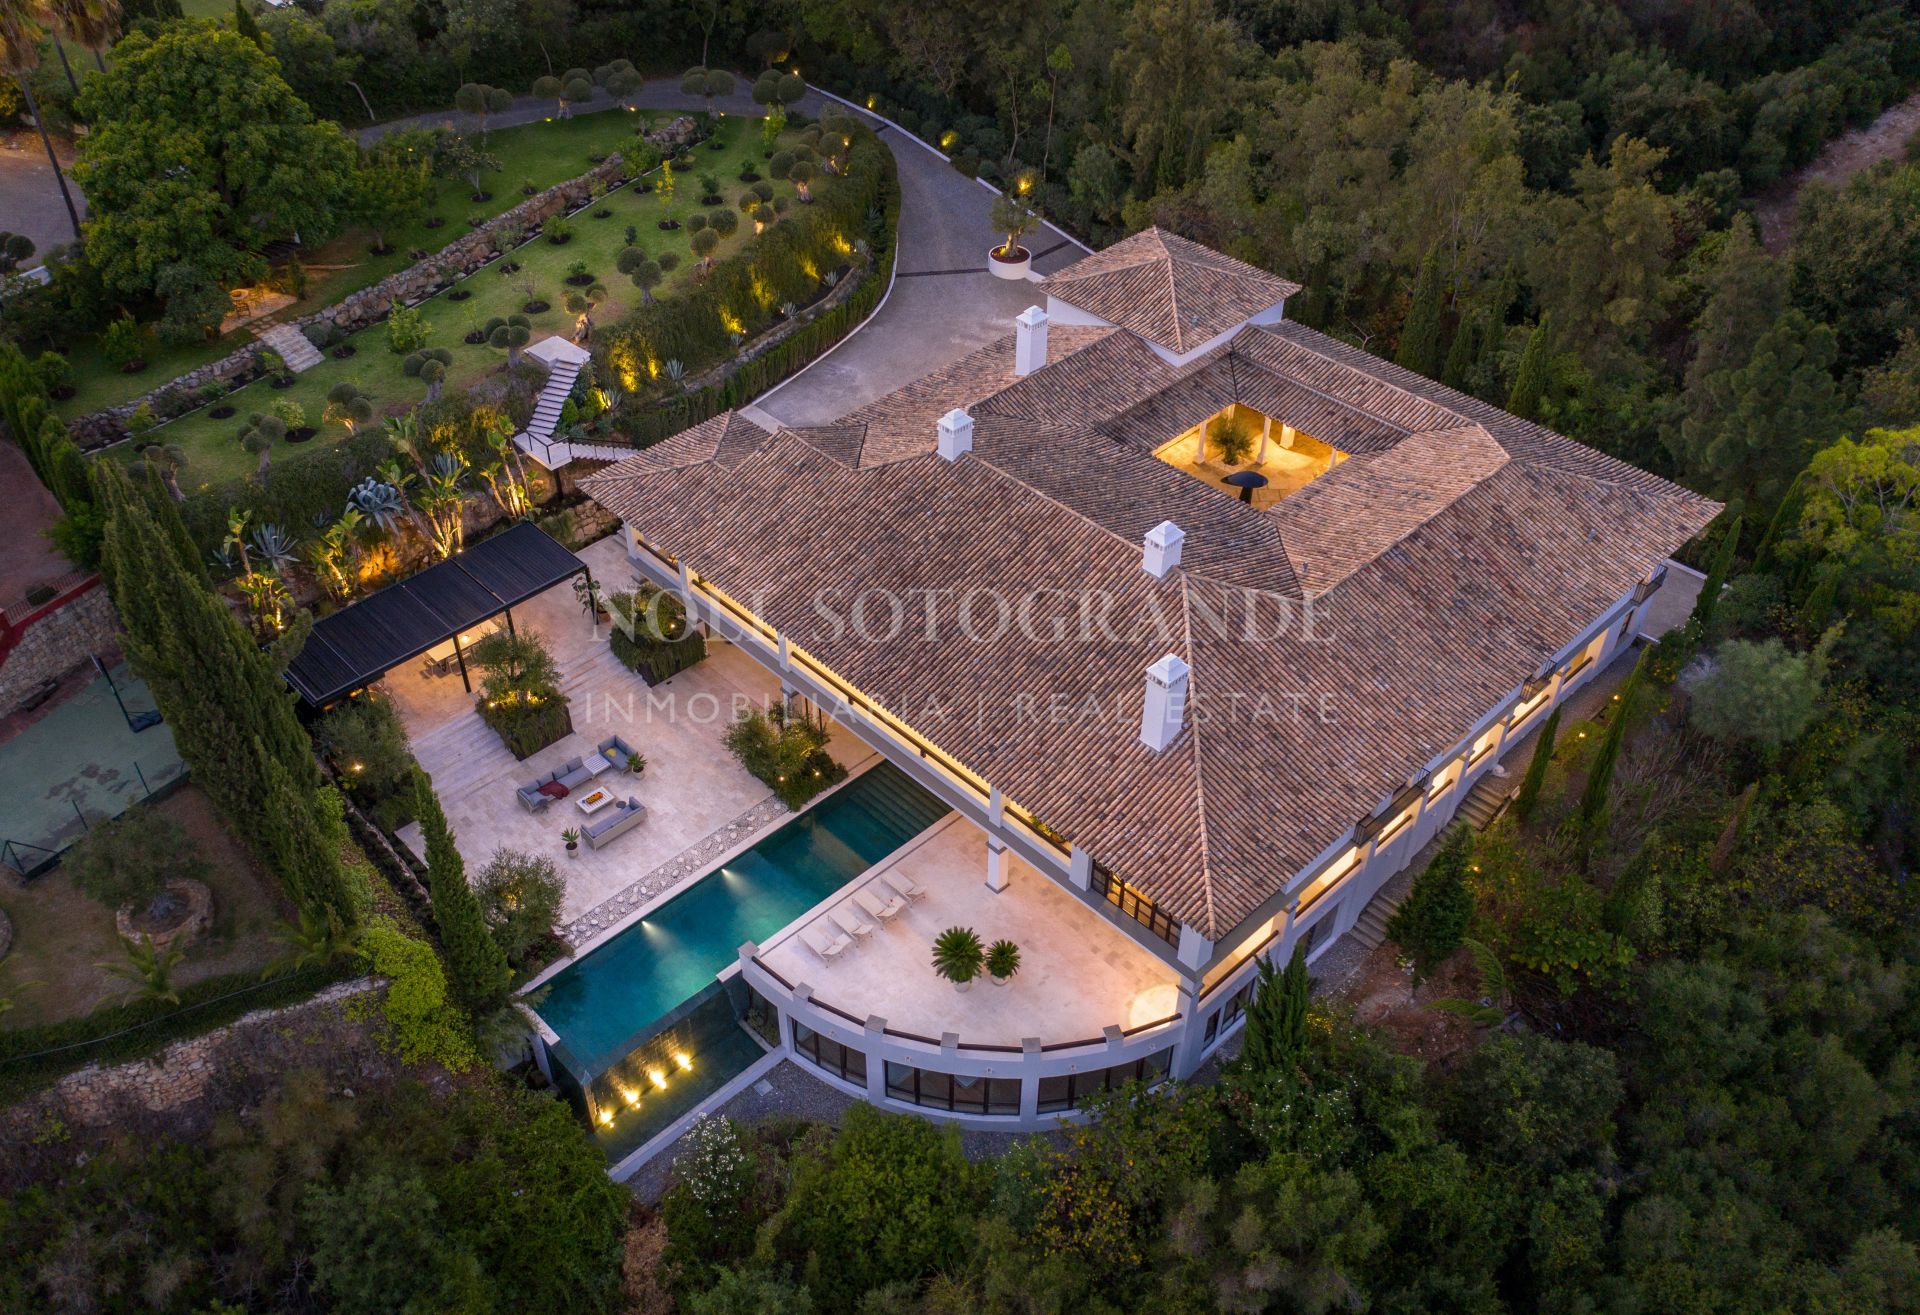 Casa Agosto Sotogrande, Luxury Villa for sale, ready to move in